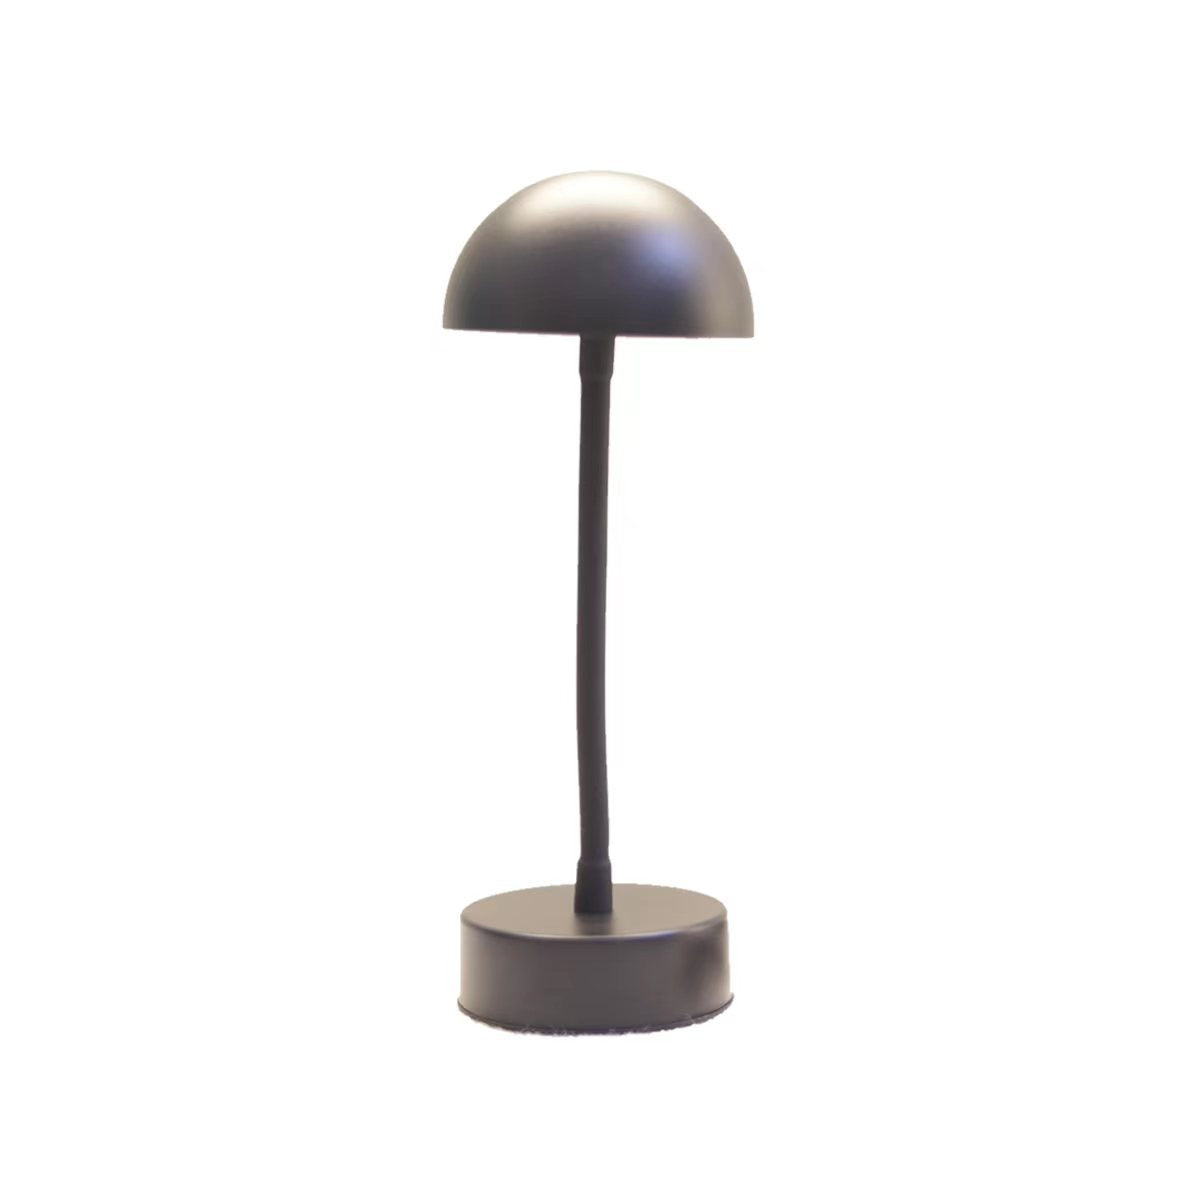 Creative Mushroom Table Lamp Simple LED Atmosphere Warm Light Small Night Lamp